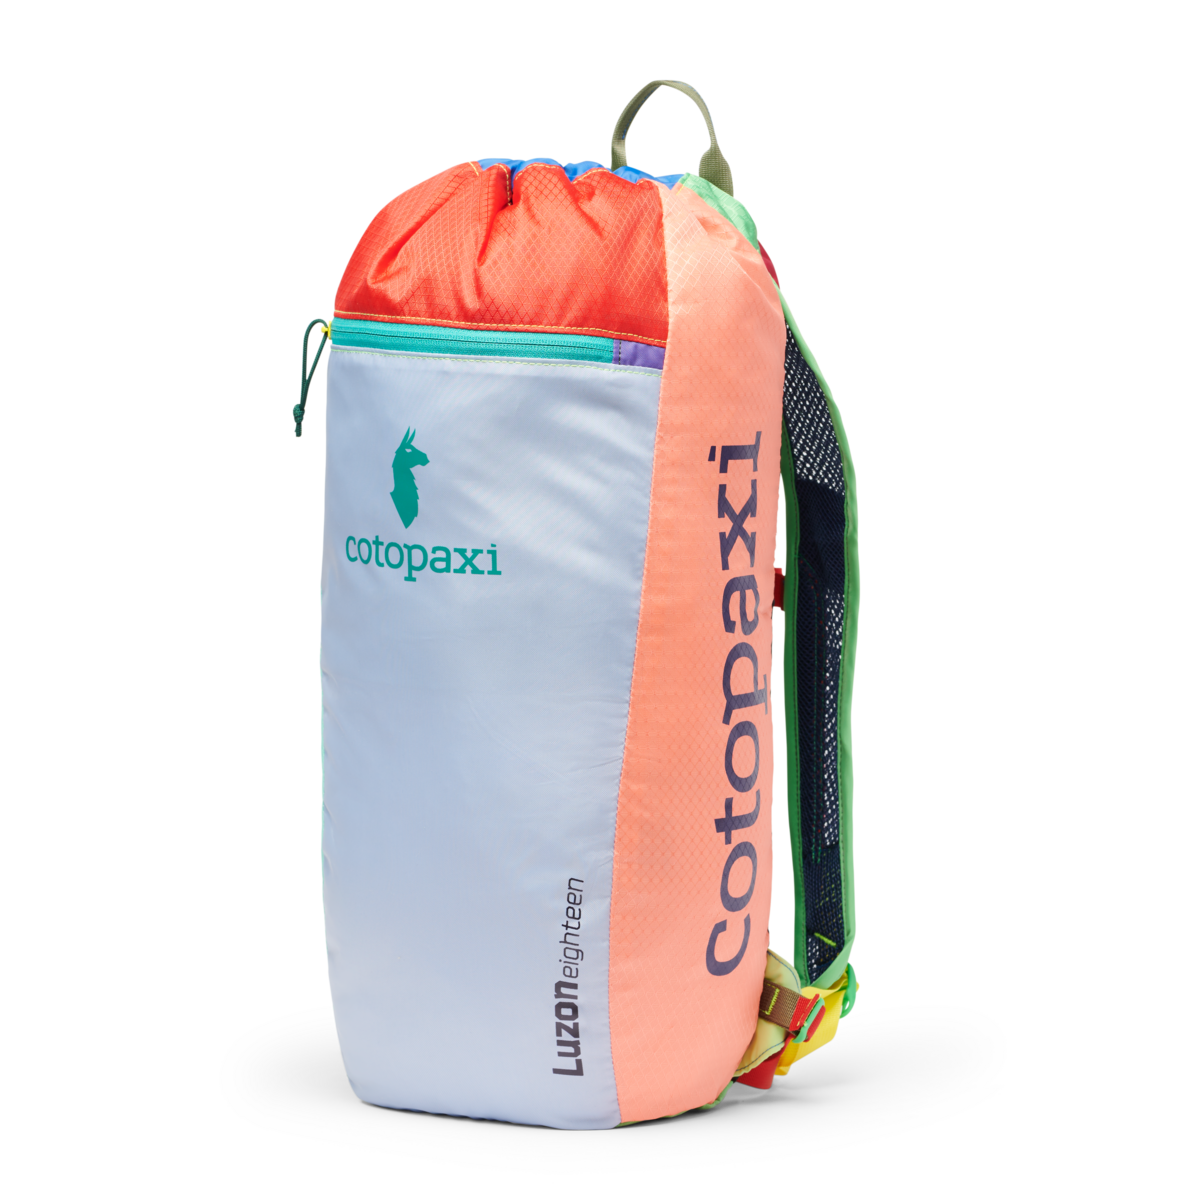 Cotopaxi Del Dia Hielo 12L Cooler Bag